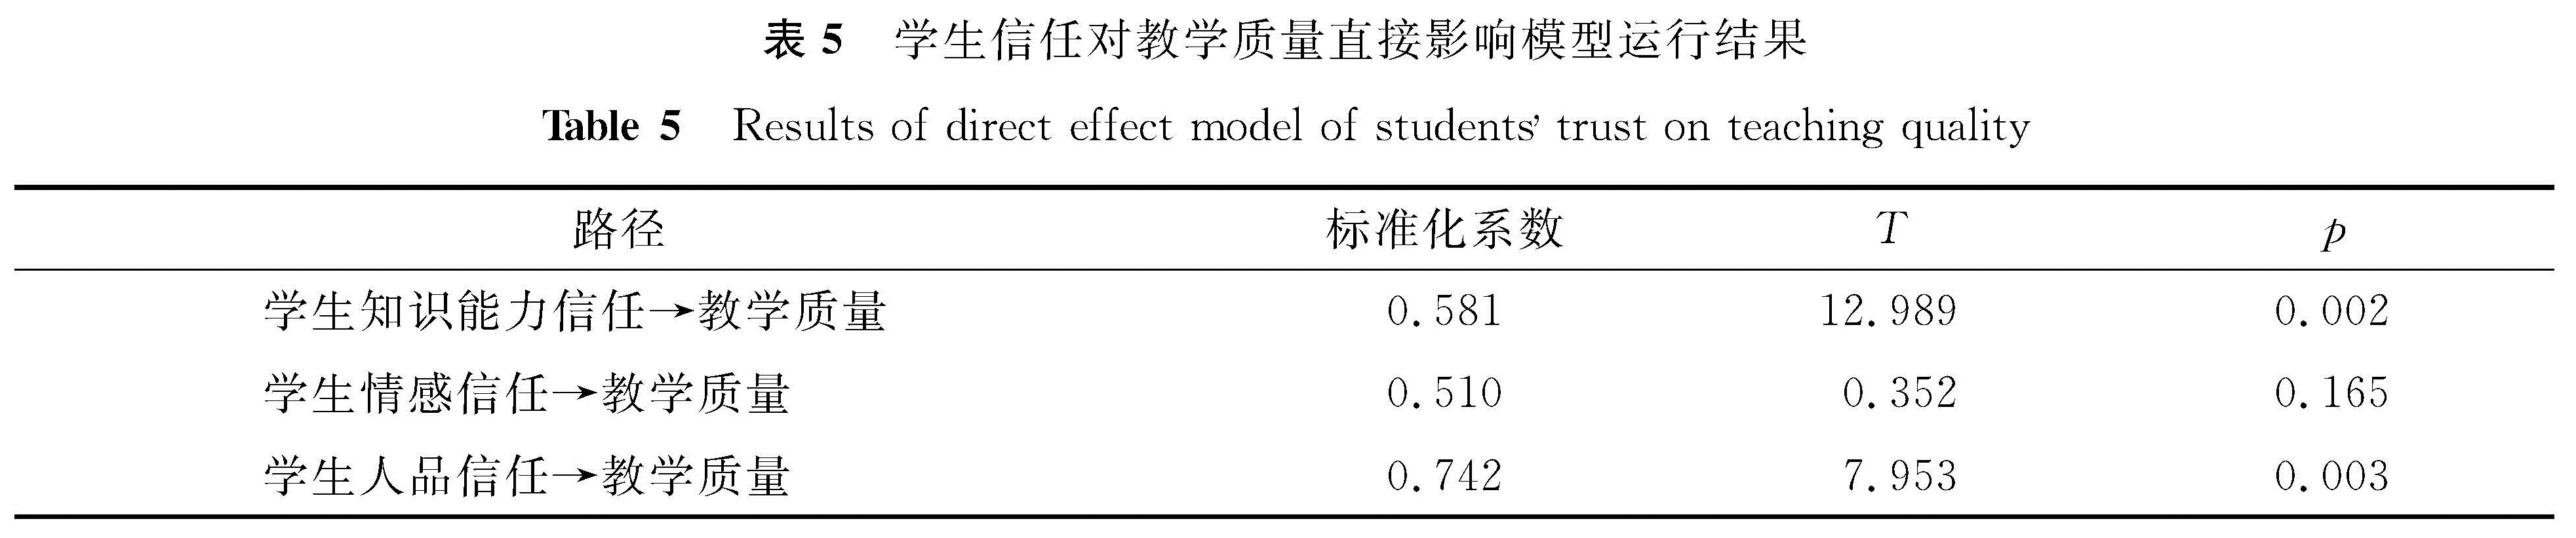 表5 学生信任对教学质量直接影响模型运行结果<br/>Table 5 Results of direct effect model of students trust on teaching quality